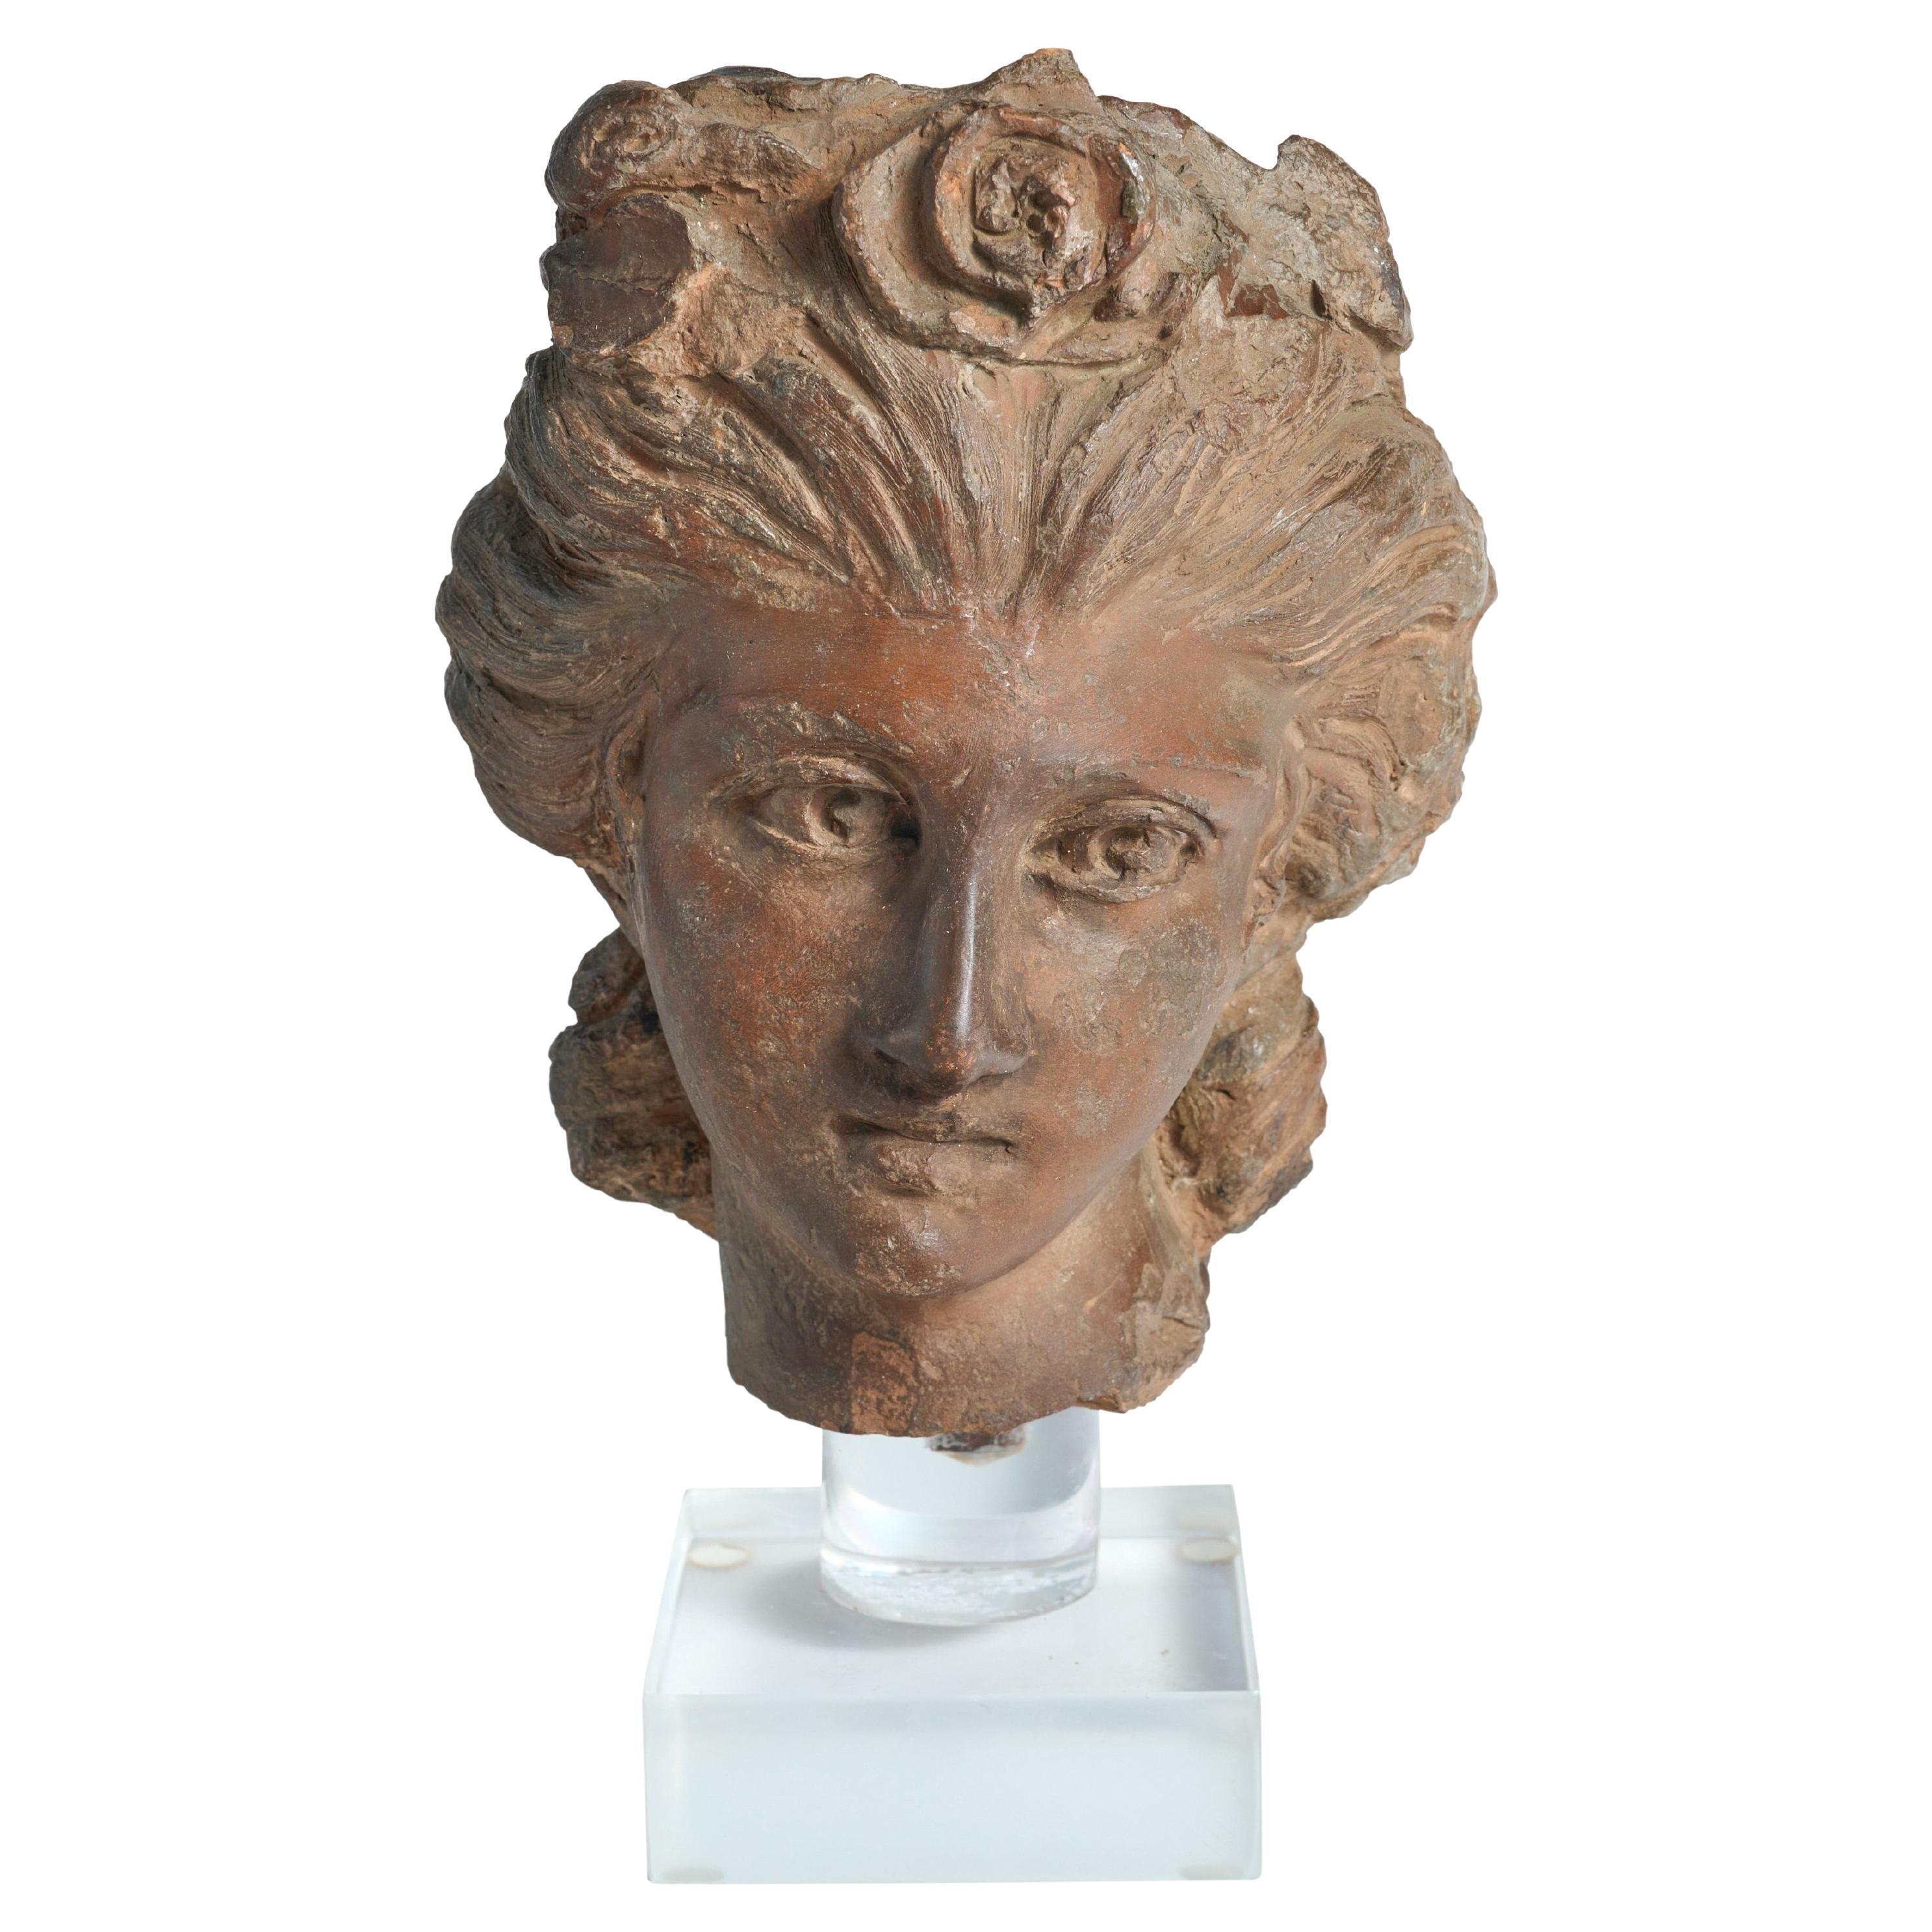 Fragment einer Terrakotta-Statue, die einen klassischen Frauenkopf darstellt